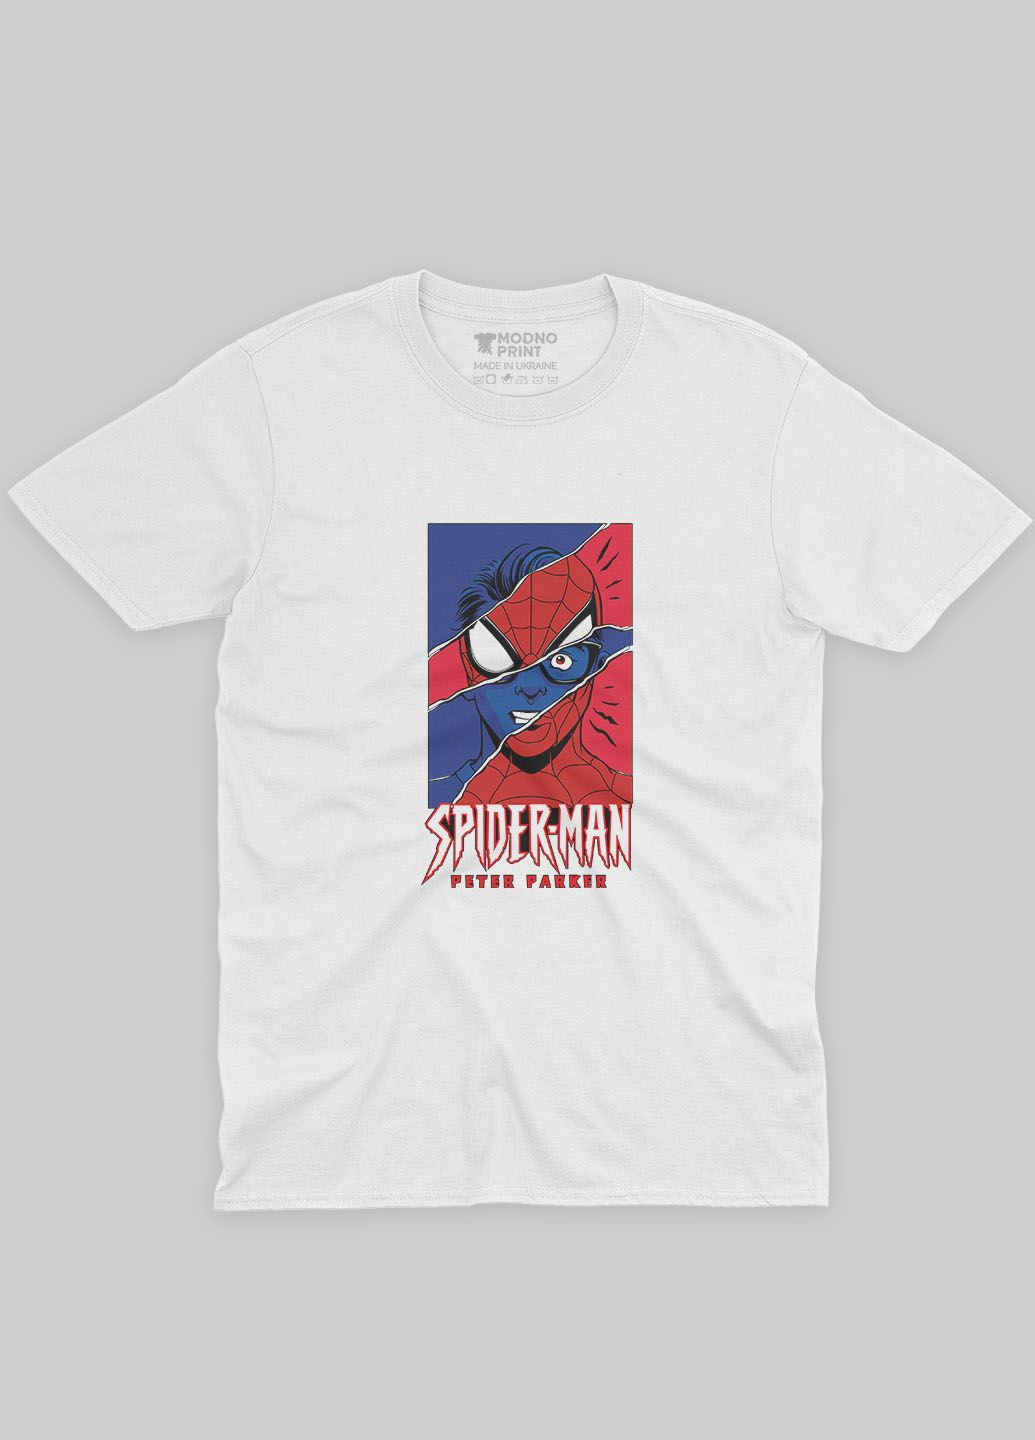 Біла демісезонна футболка для дівчинки з принтом супергероя - людина-павук (ts001-1-whi-006-014-032-g) Modno